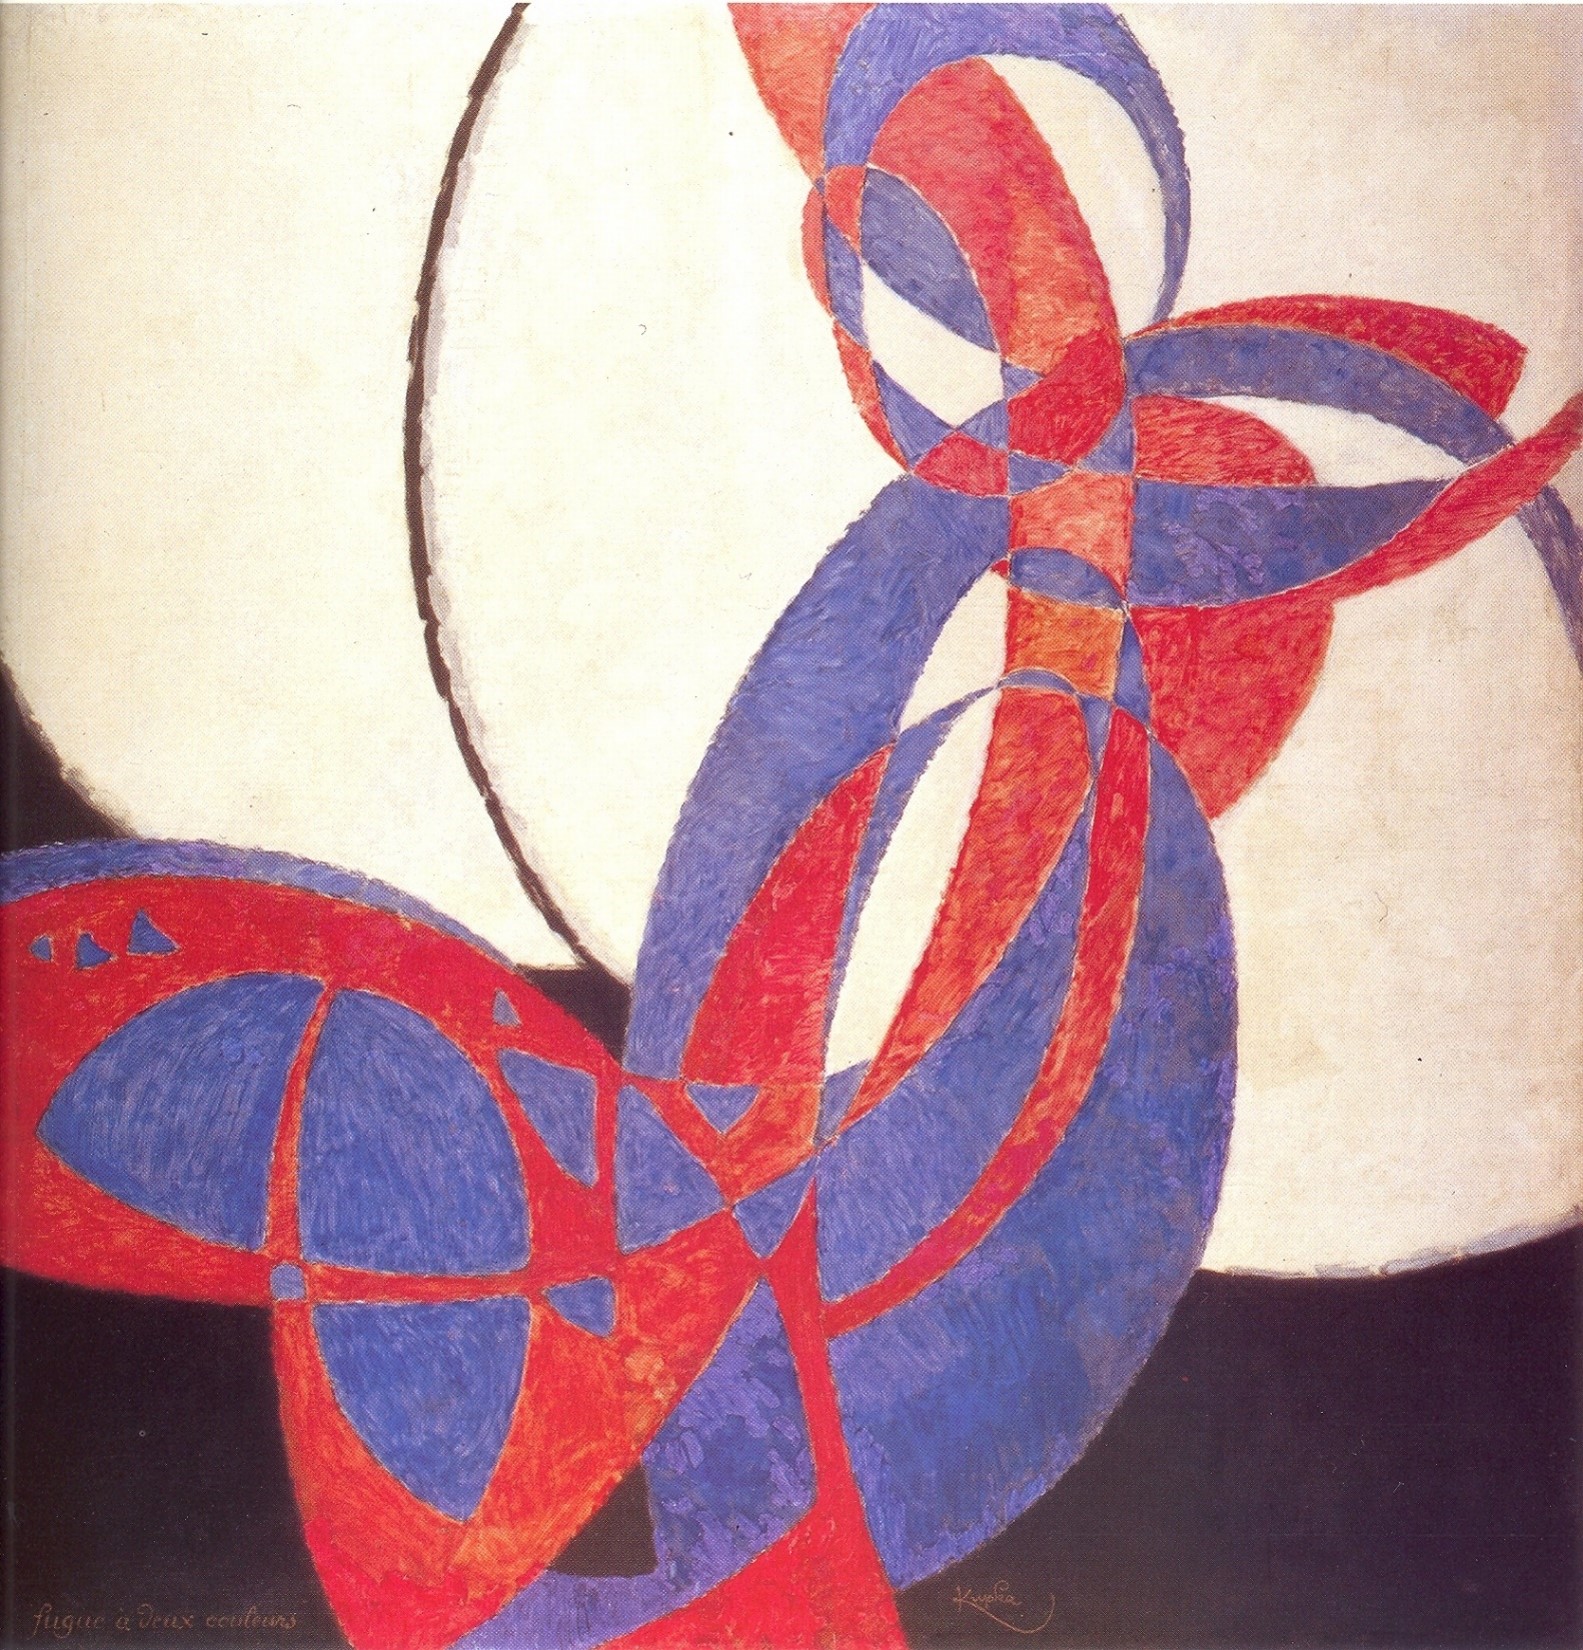 Frank Kupka, Amorpha-Fugue à deux couleurs, 1912, h/t 211x220 cm, Prague, Narodní Galerie